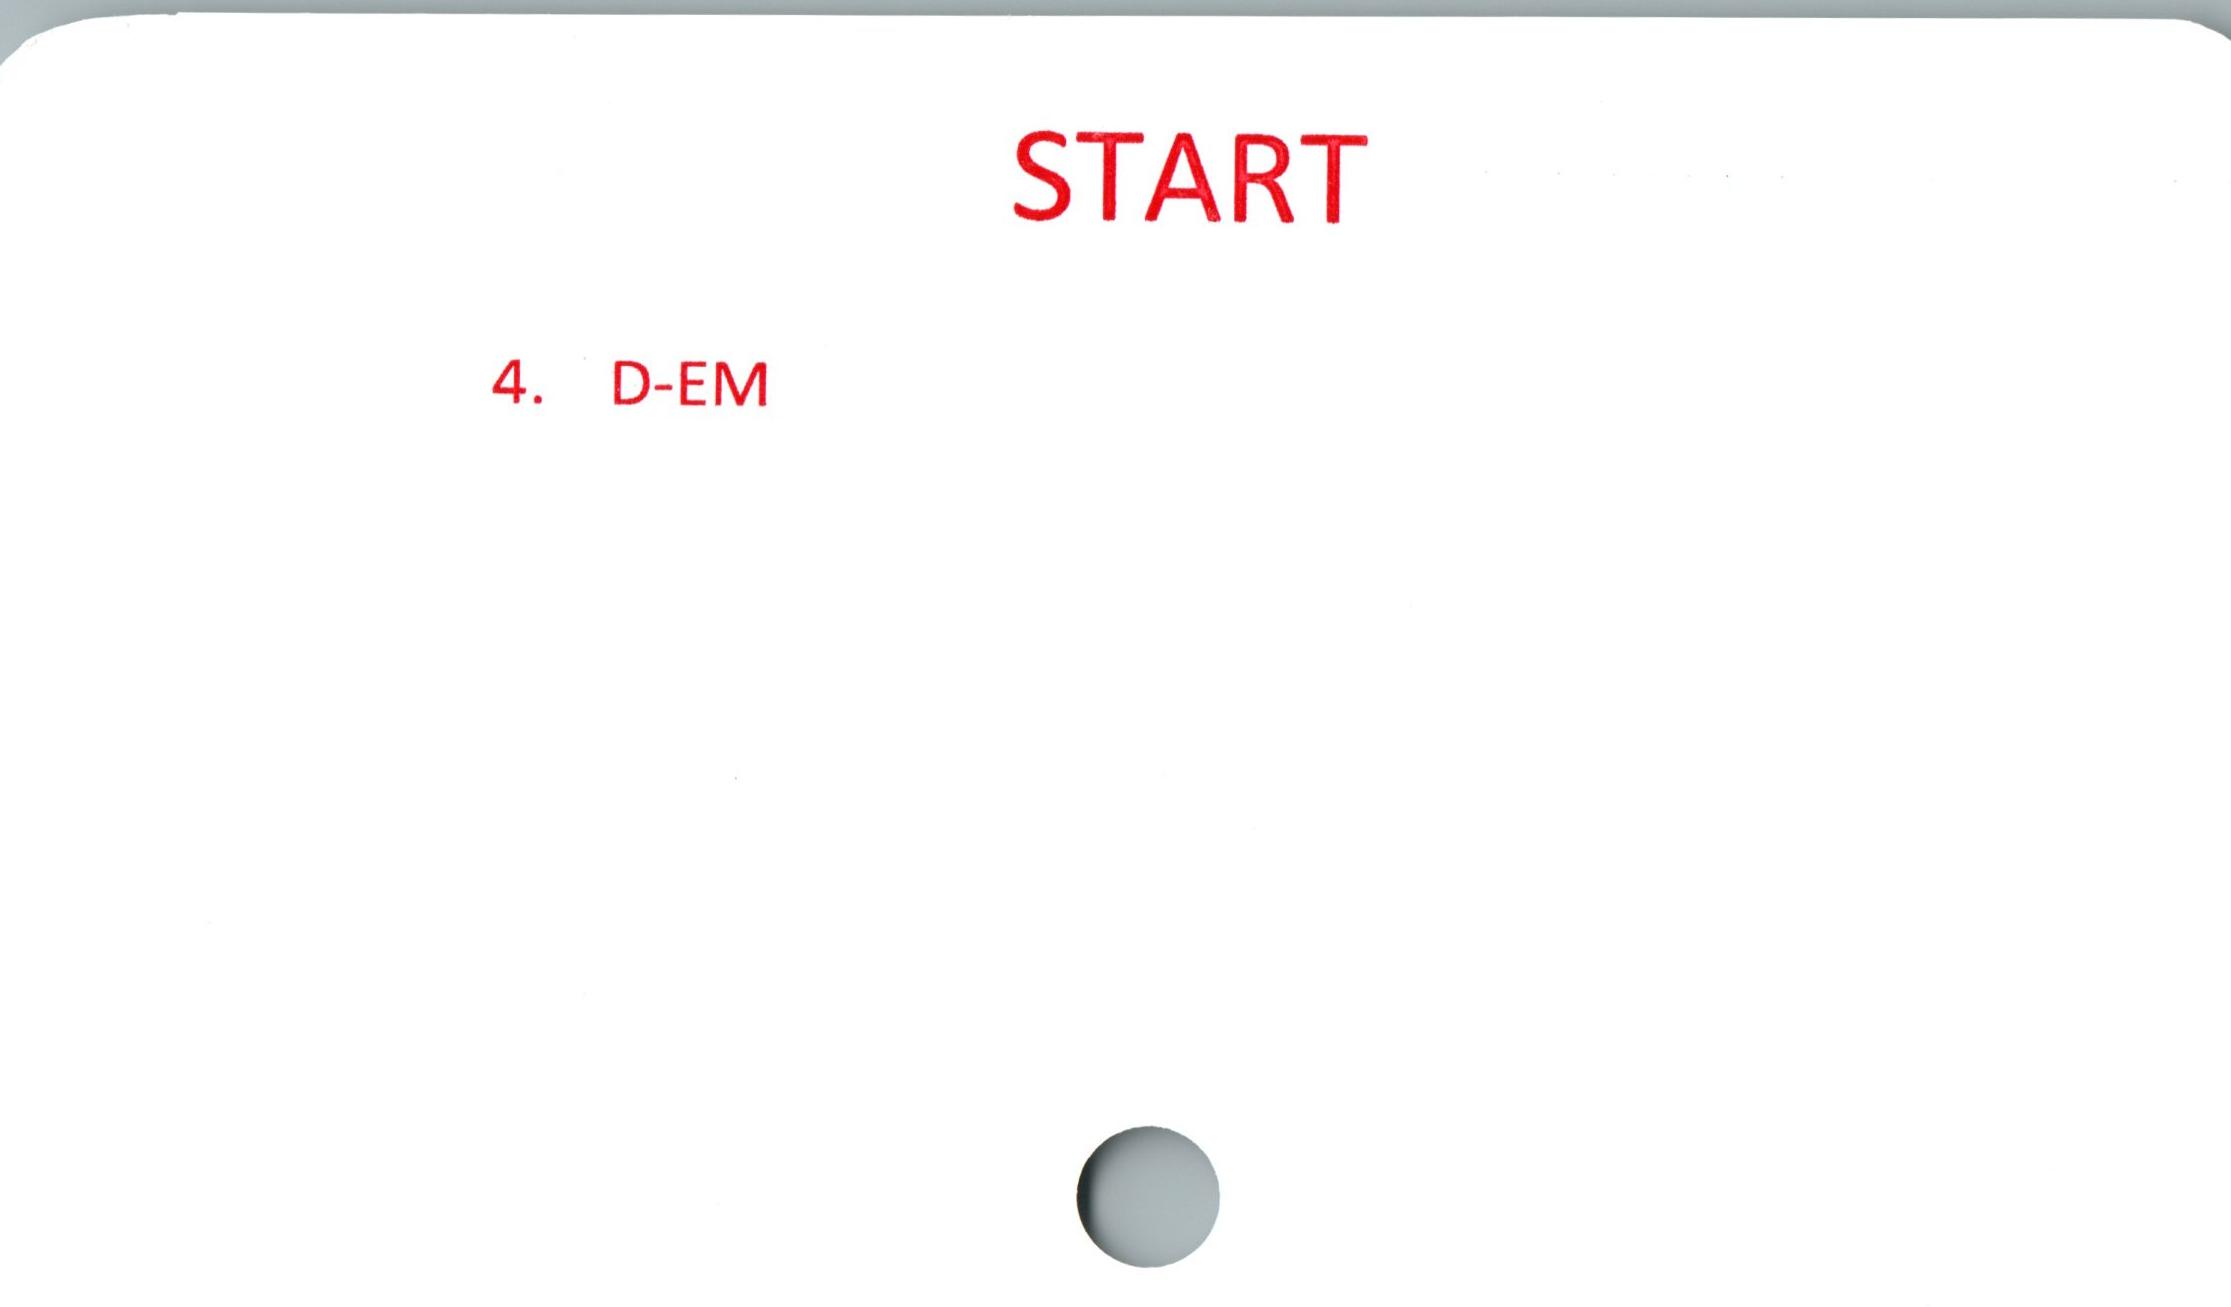 START ﻿4. D-EM

START